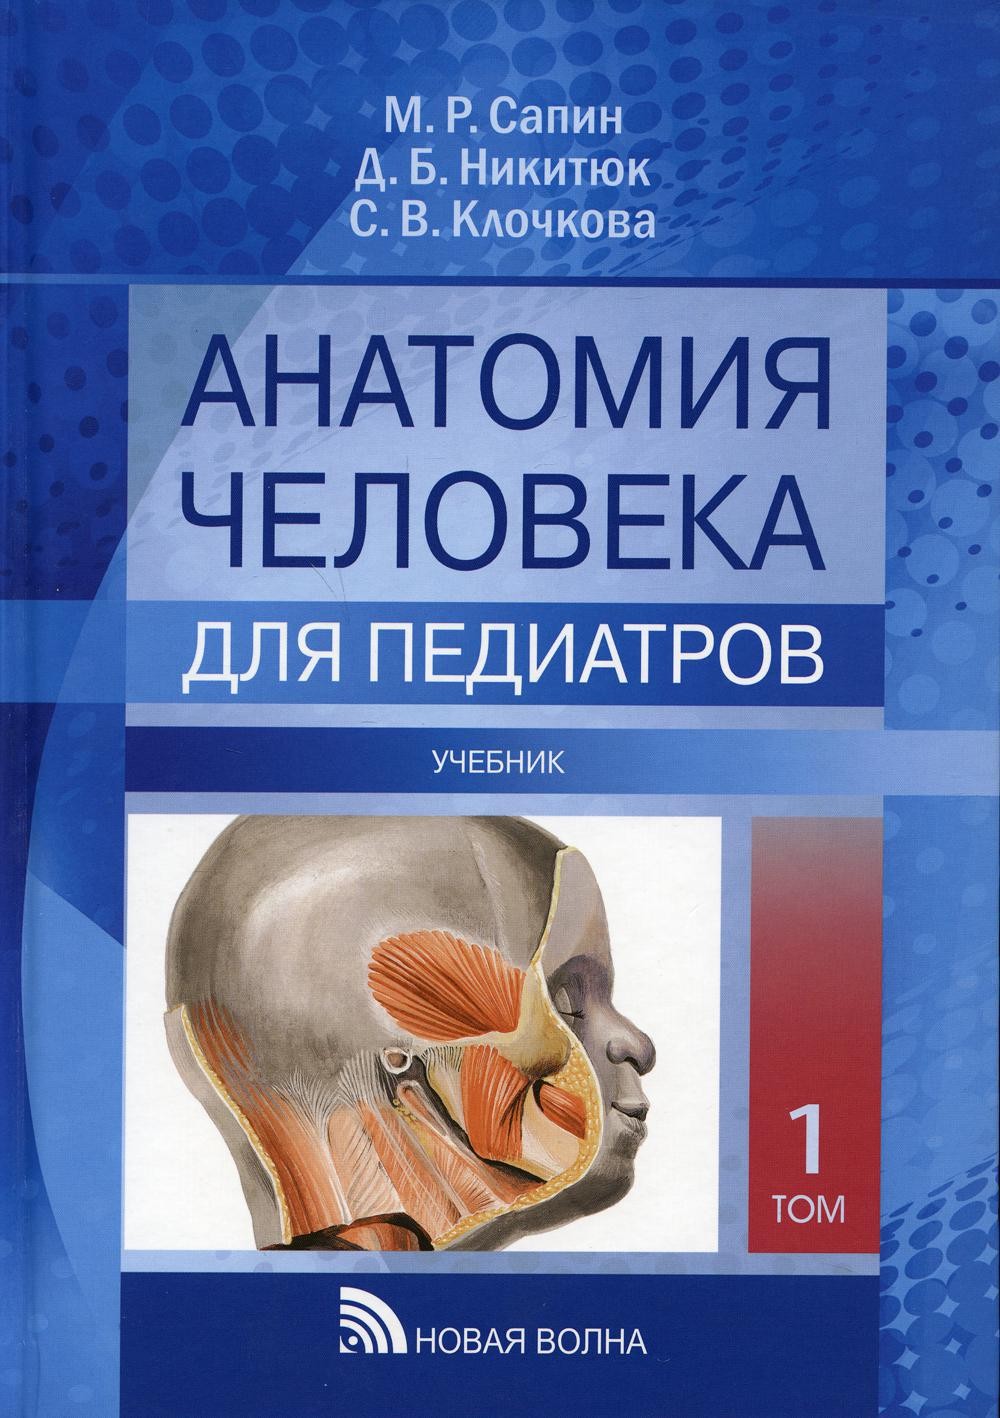 Сапин Анатомия человека для педиатров Учебник Том 1